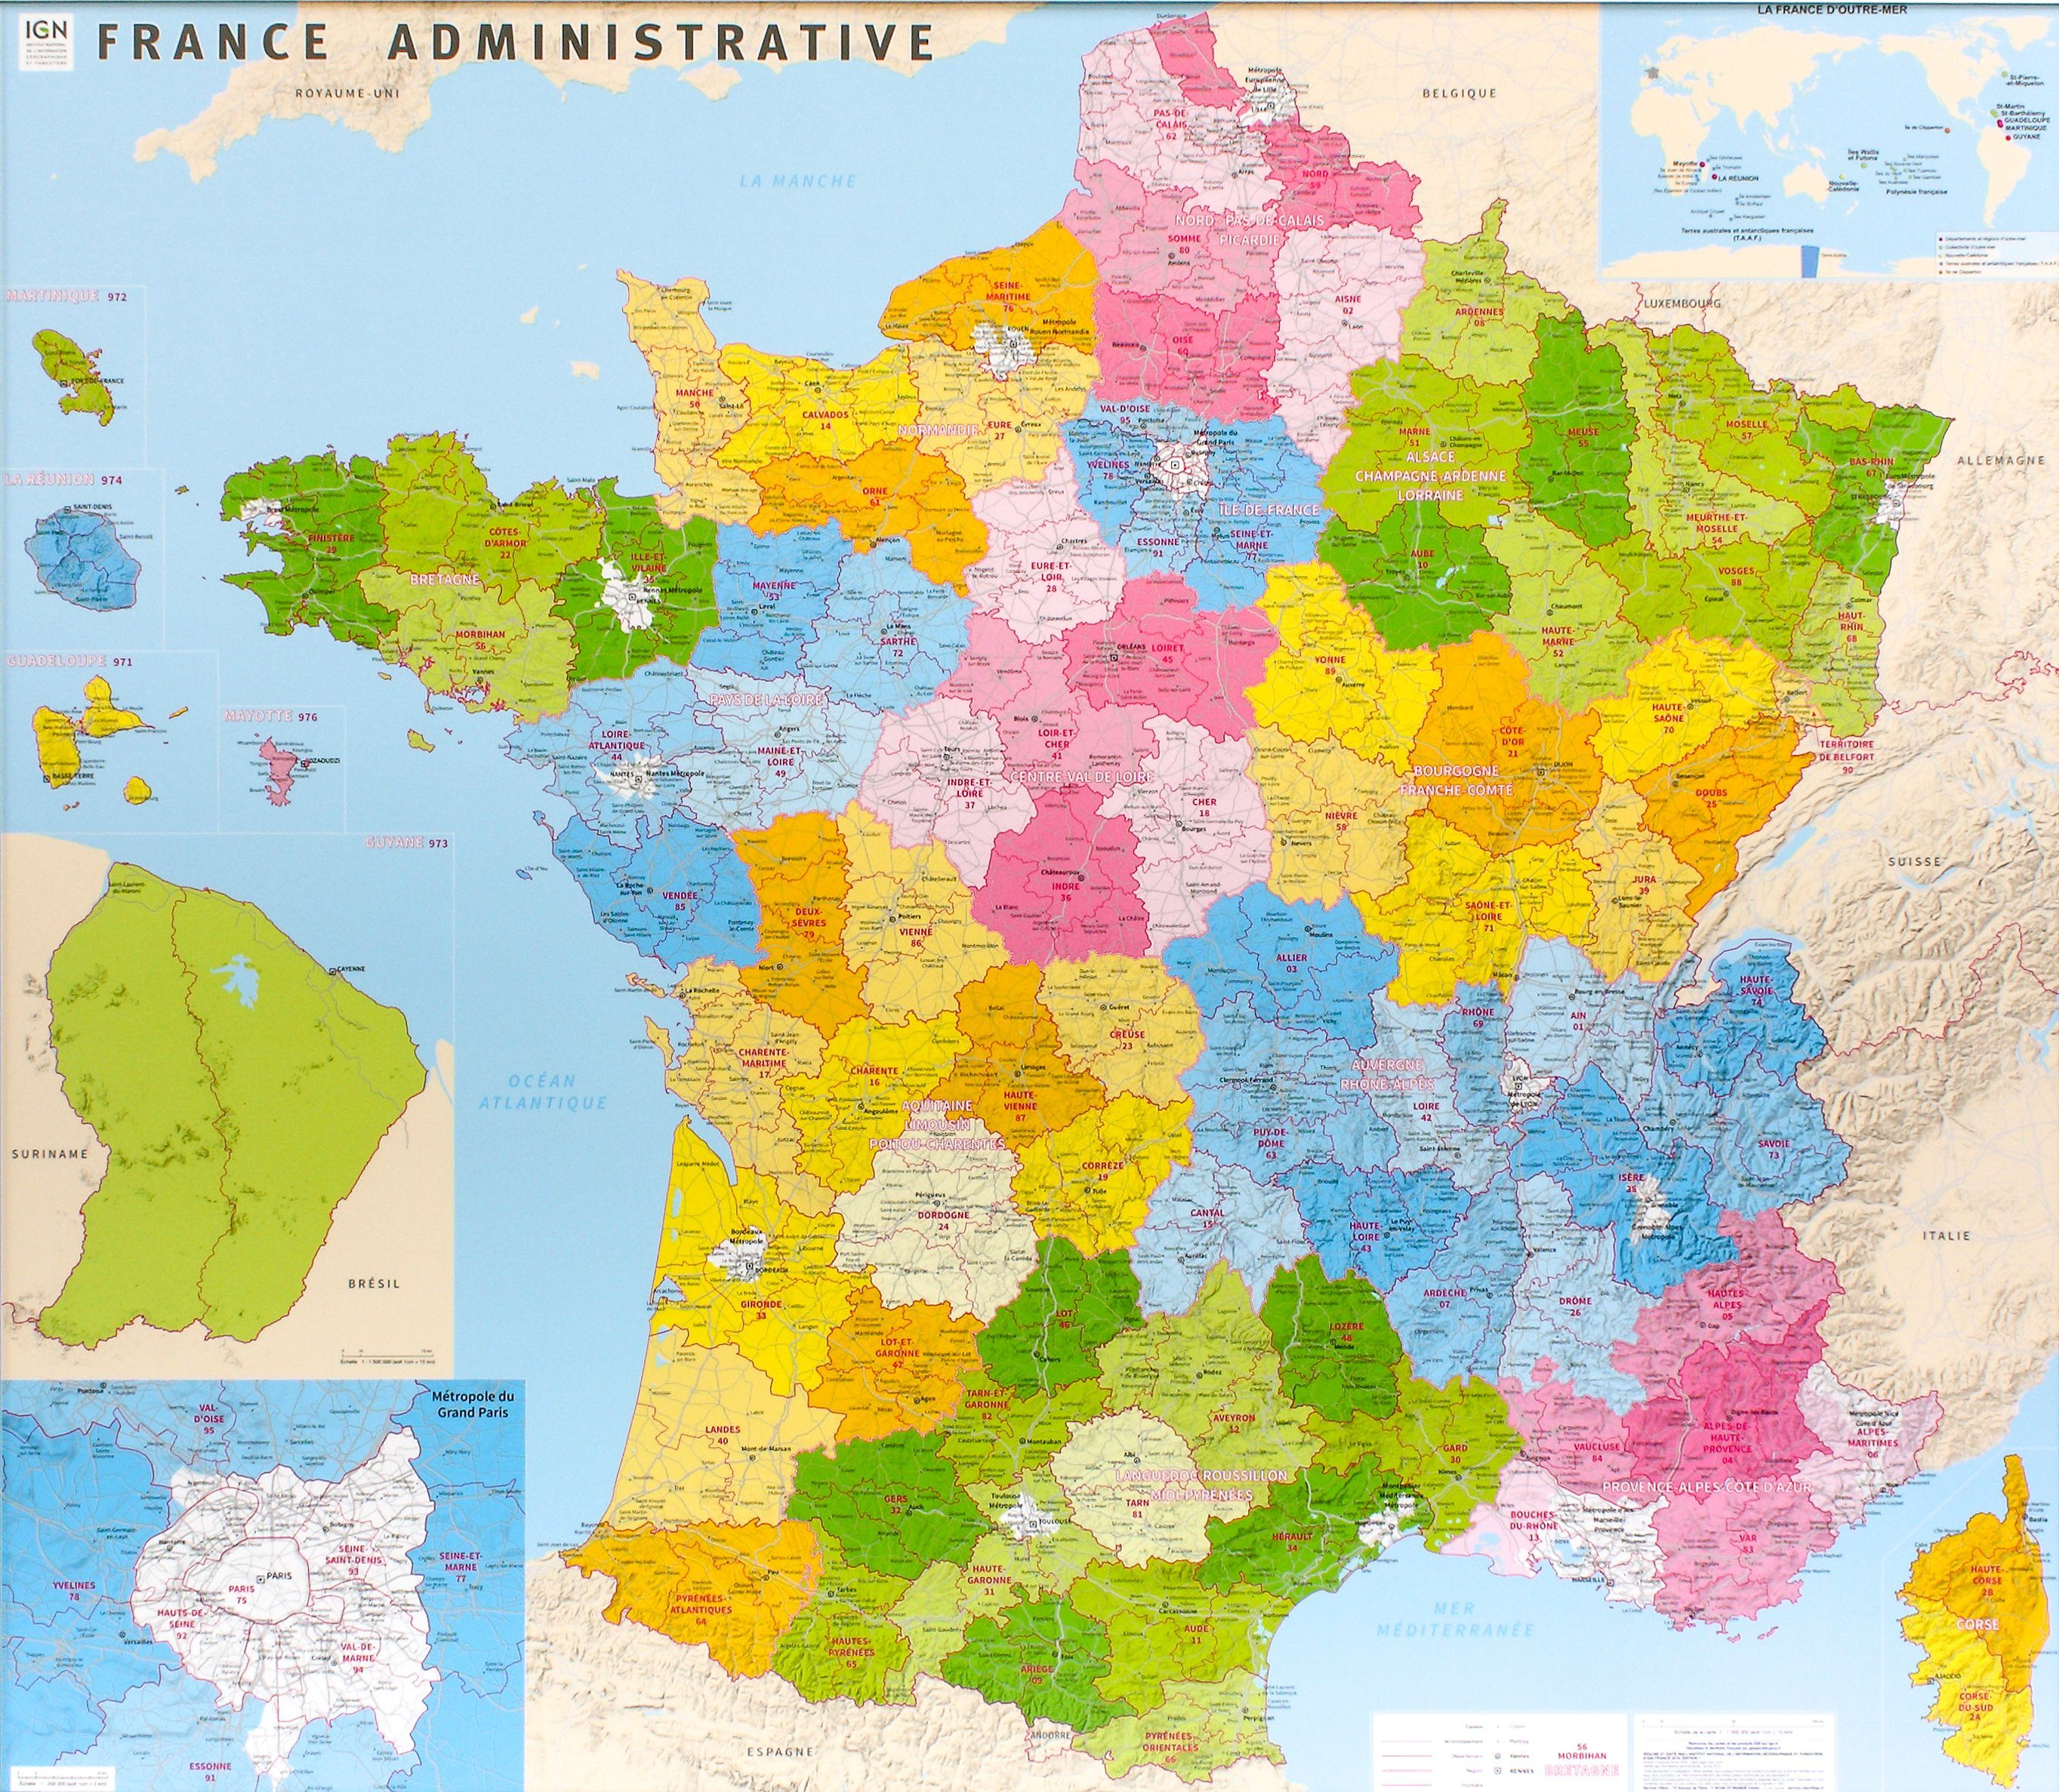 Poster plastifié - France administrative (nouvelles régions) - 98 x 113 cm | IGN 